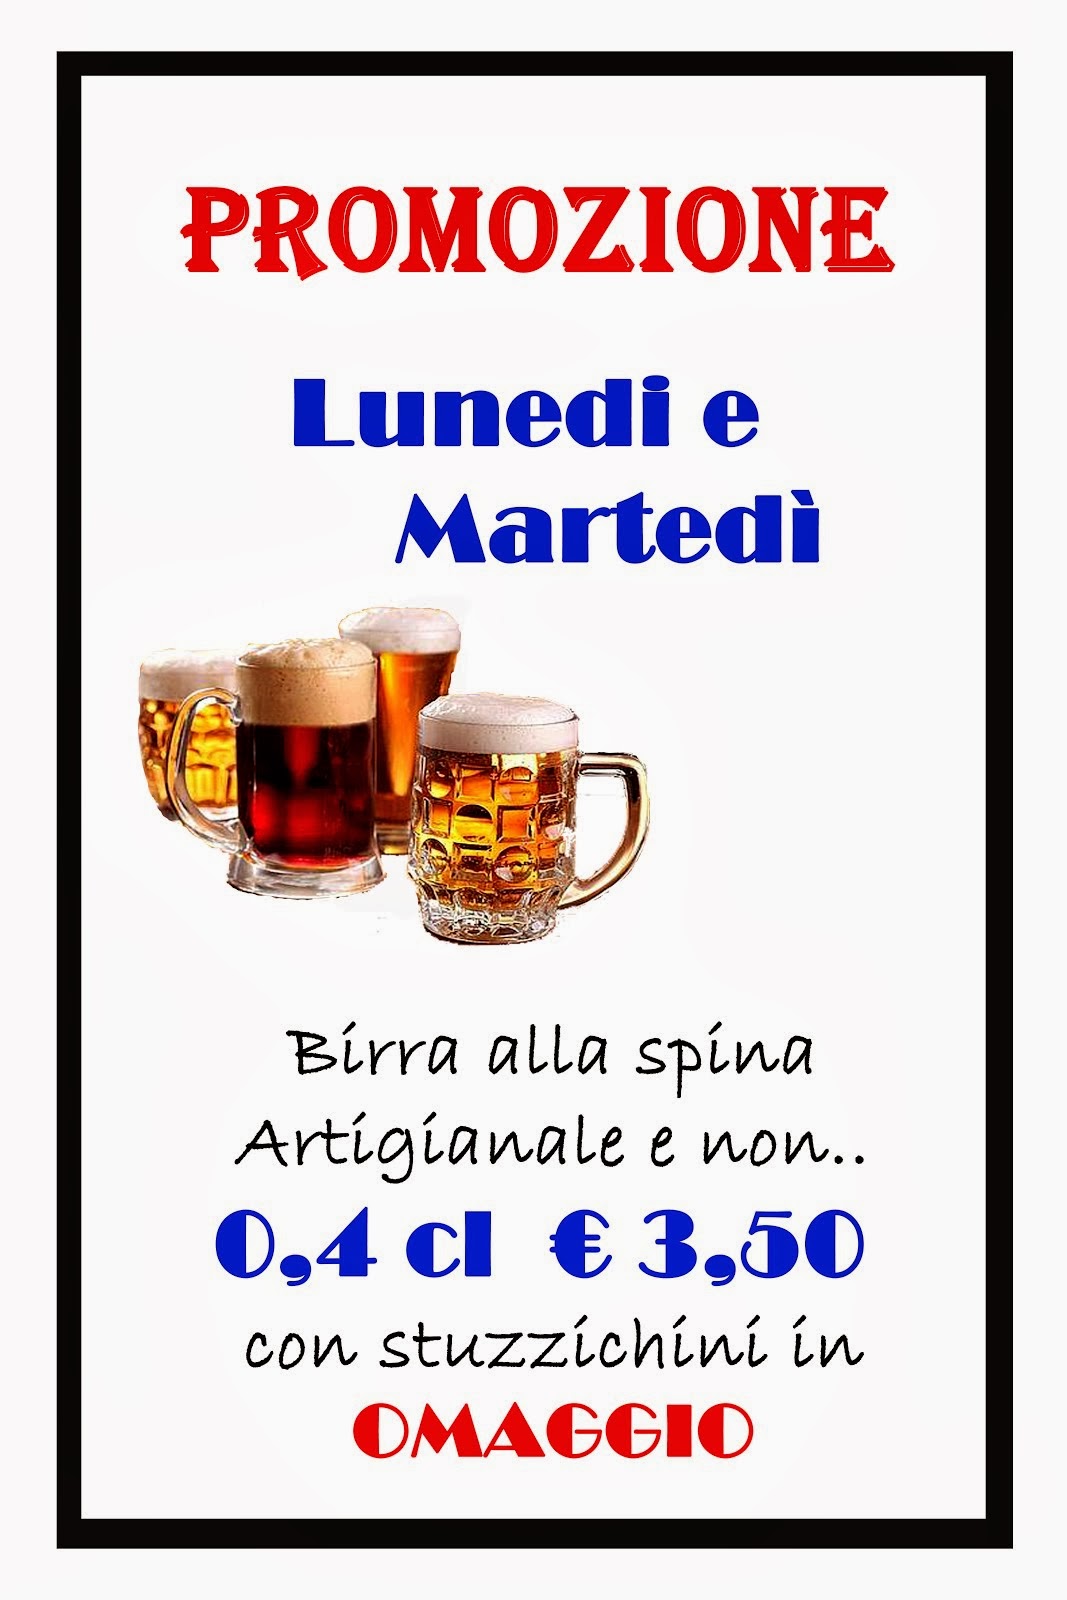 tutti i lunedi e martedi birra alla spina 0,4cl a 3,50 euro